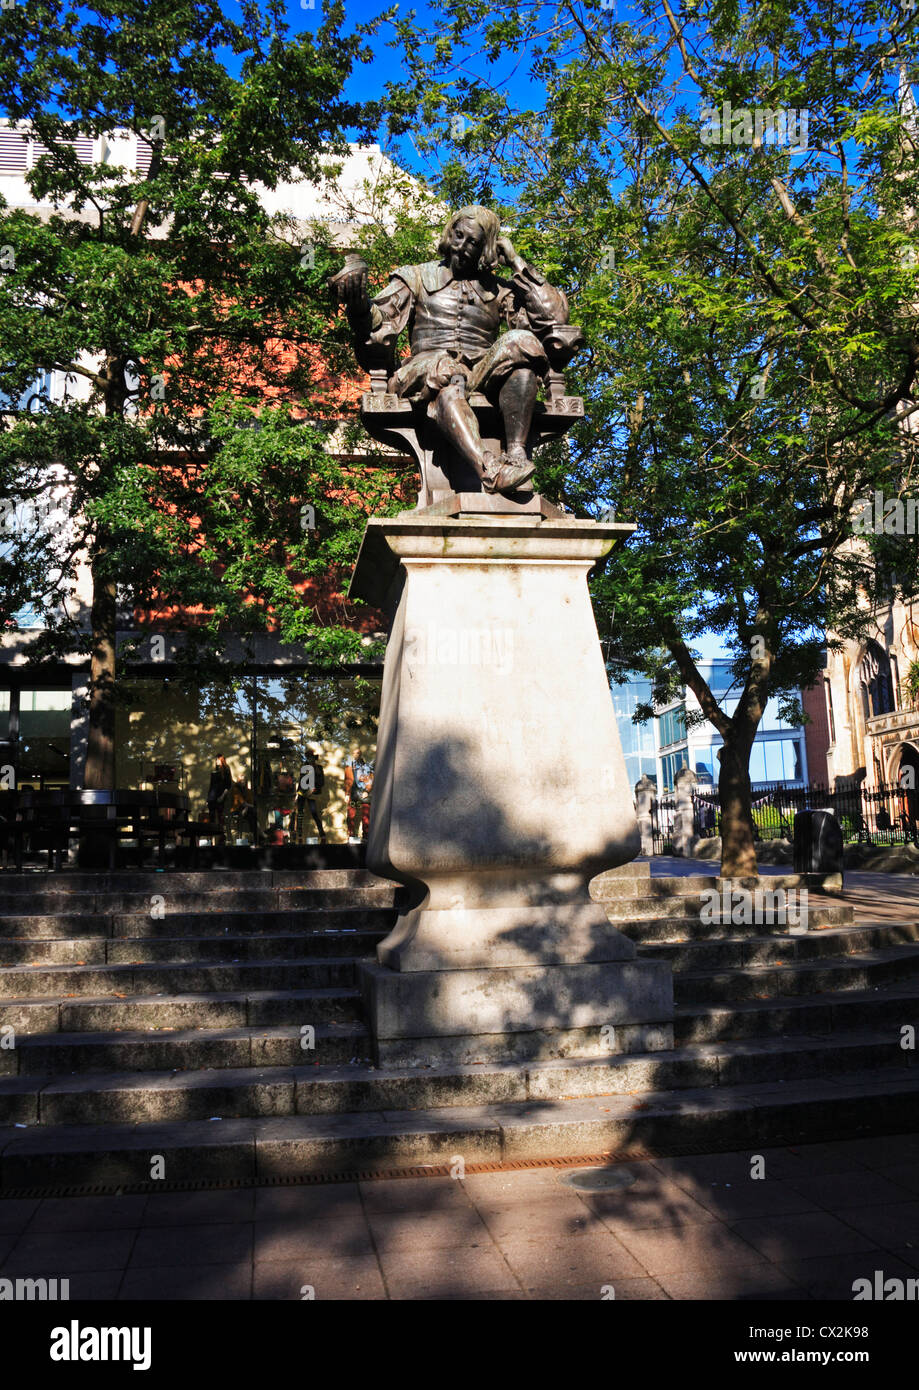 La statue de Sir Thomas Browne à Hay Hill dans le centre-ville de Norwich, Norfolk, Angleterre, Royaume-Uni. Banque D'Images